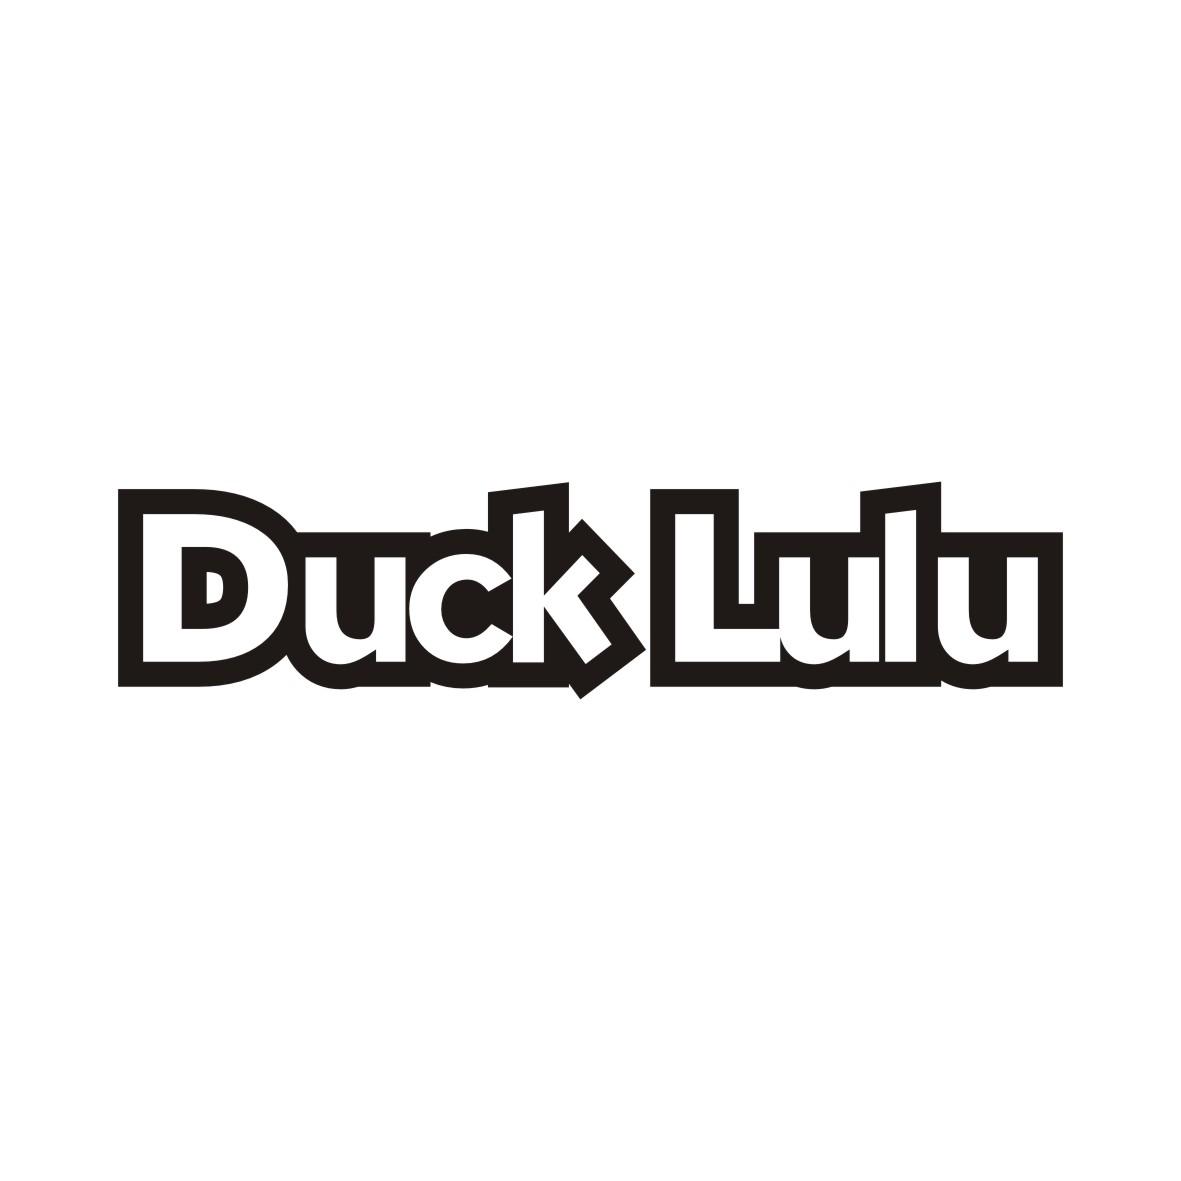 16类-办公文具DUCK LULU商标转让